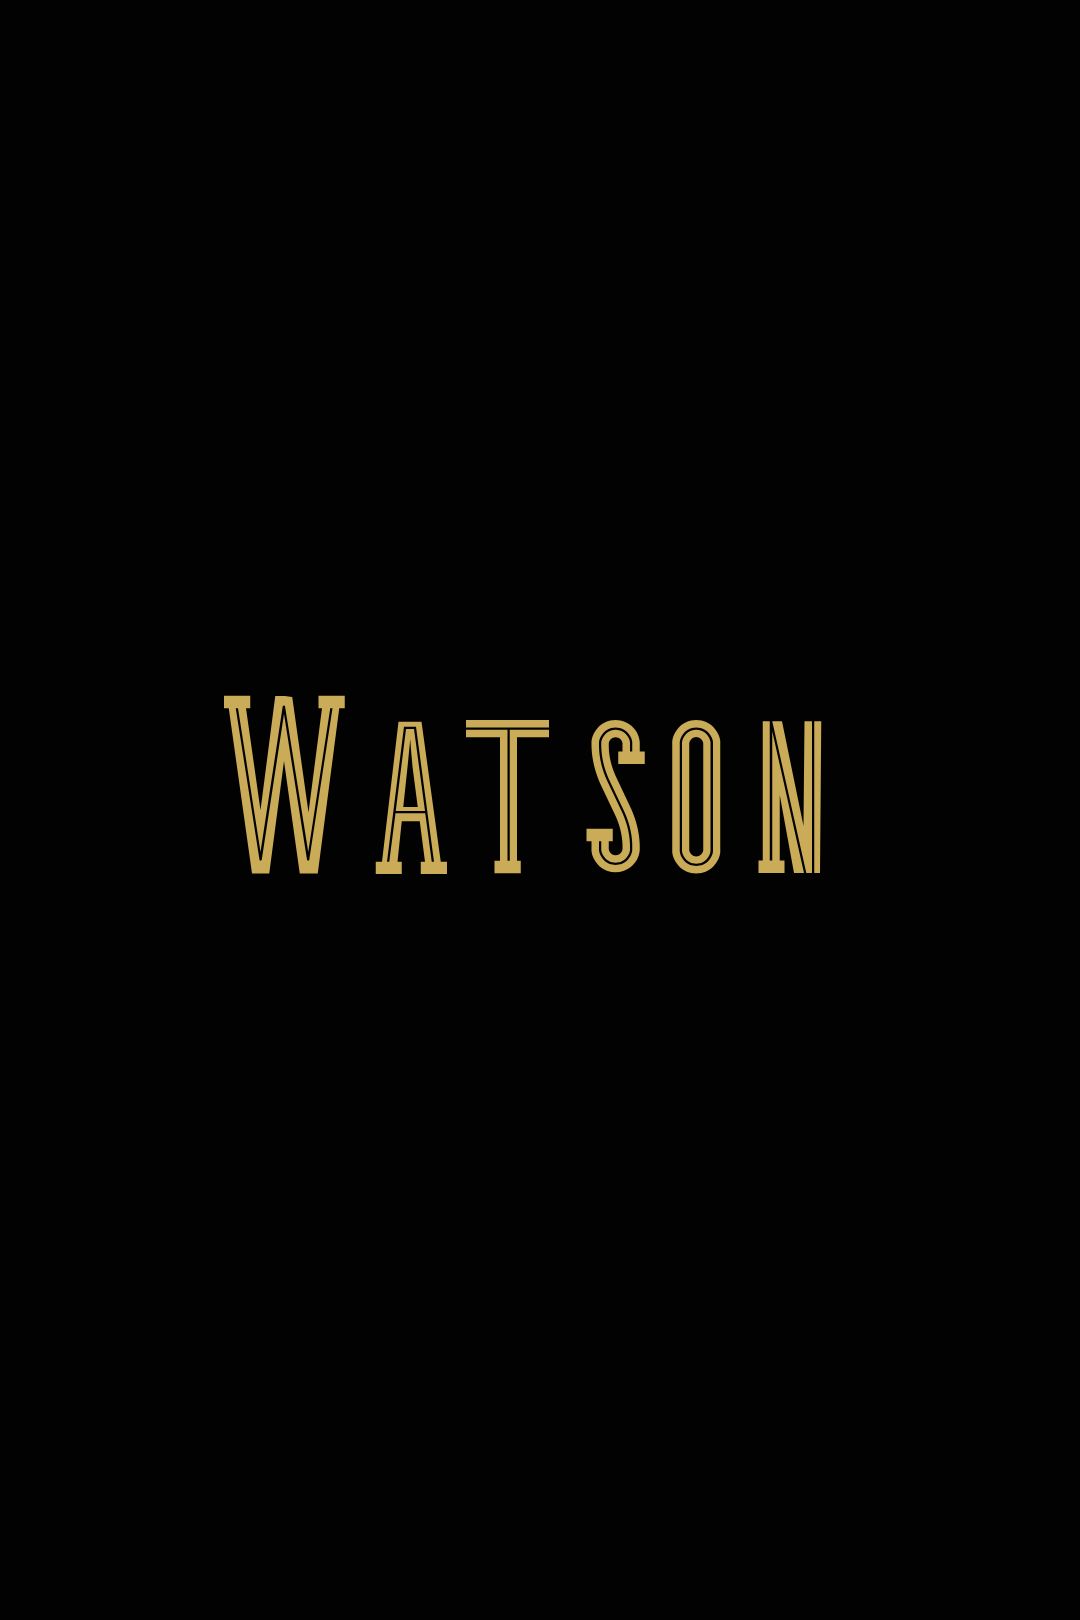 Pôster do logotipo temporário da série de TV Watson